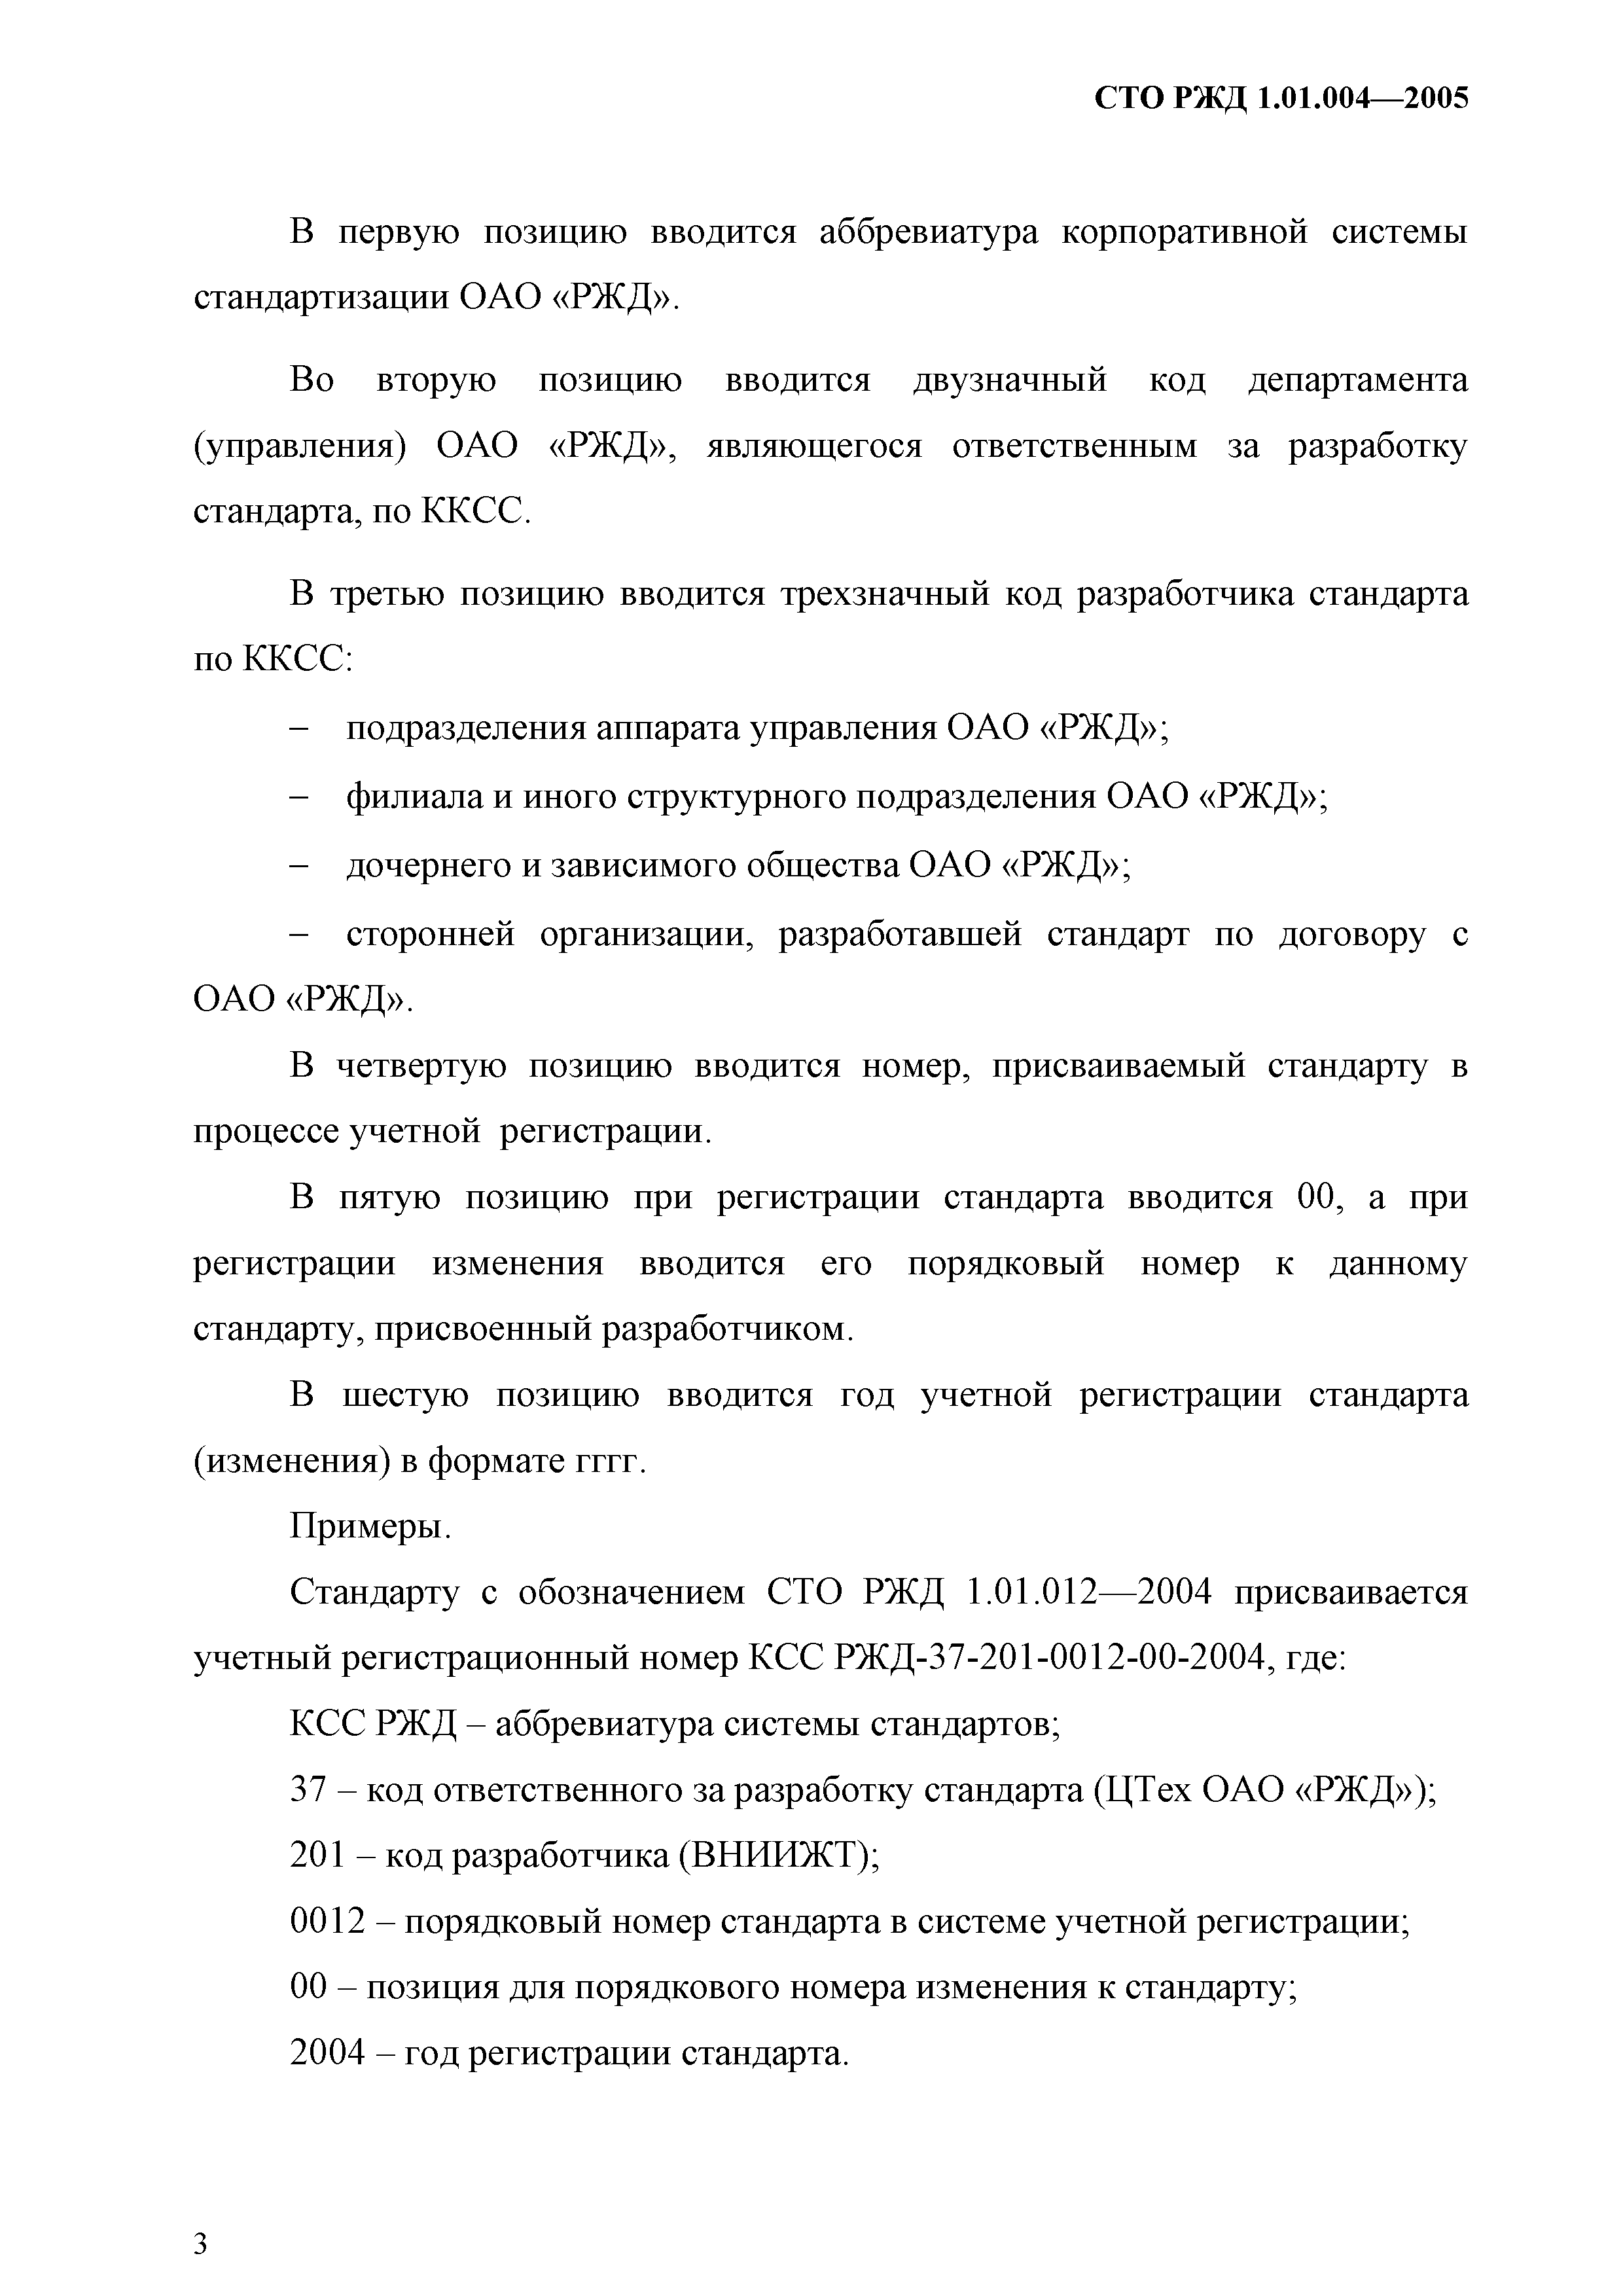 СТО РЖД 1.01.004-2005